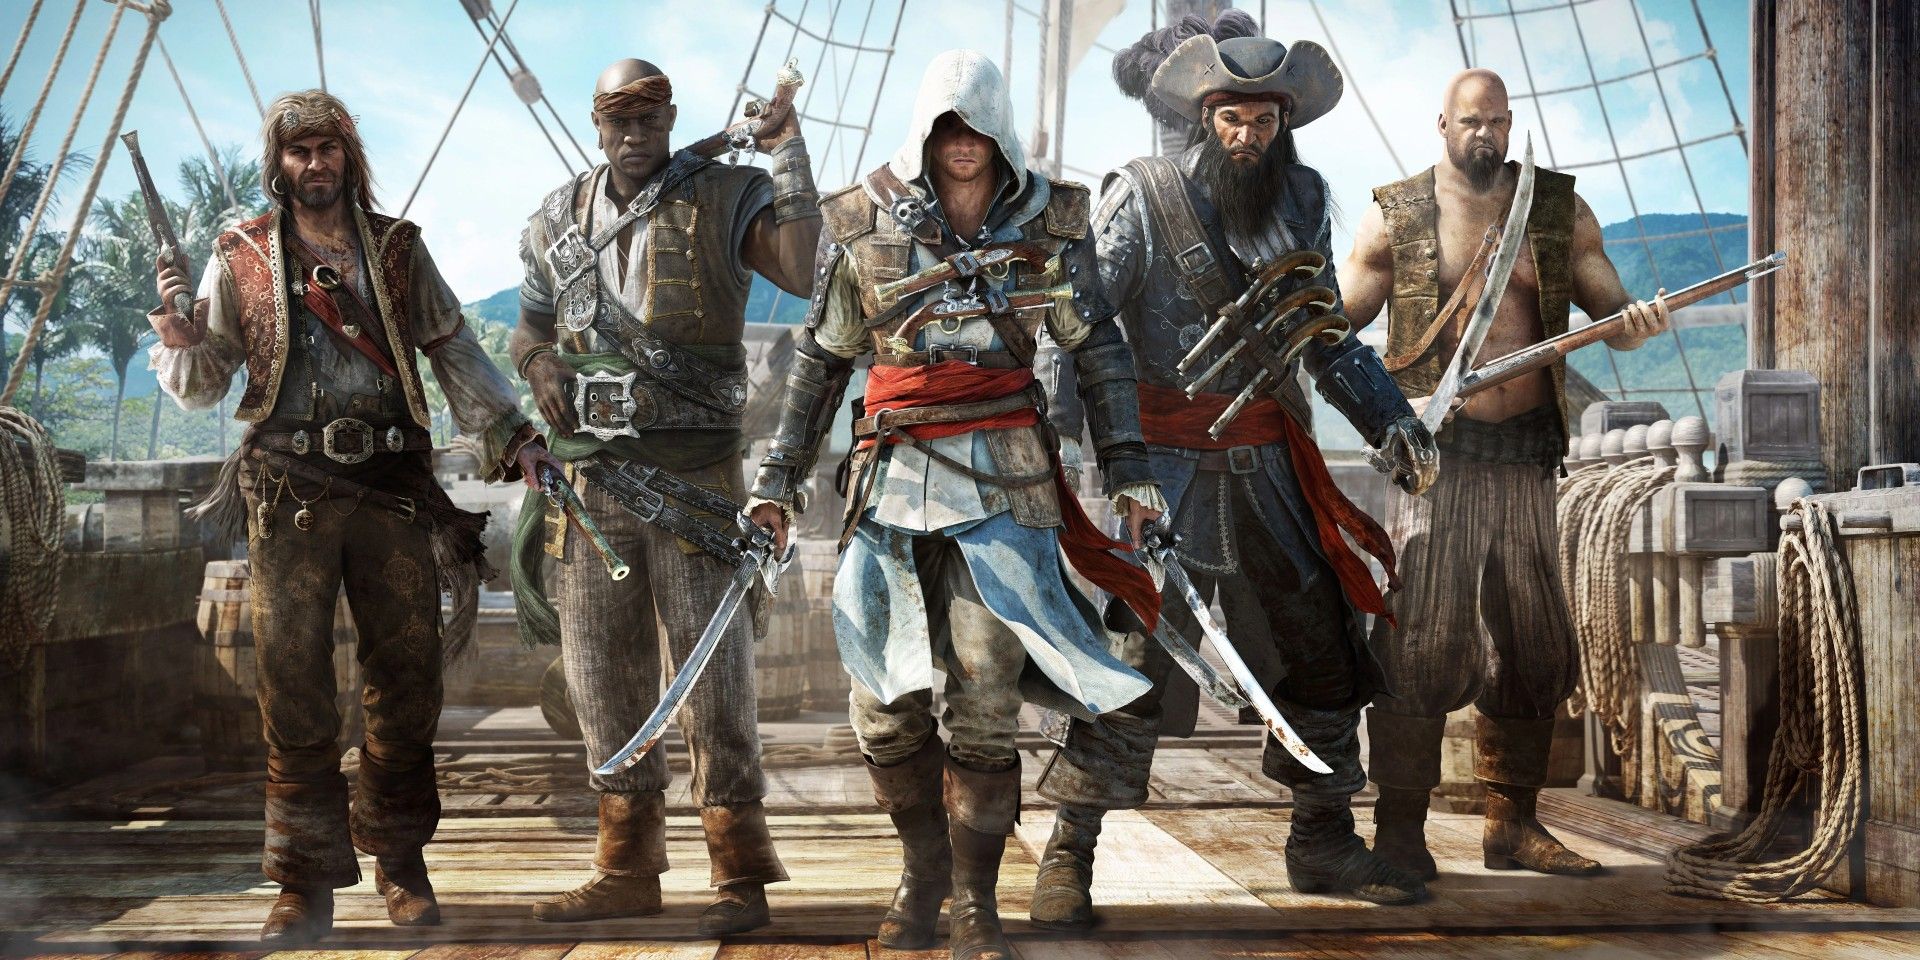 Assassin's Creed IV: Black Flag's Edward Kenway empunhando duas espadas, cercado por outros quatro piratas no convés de um navio.